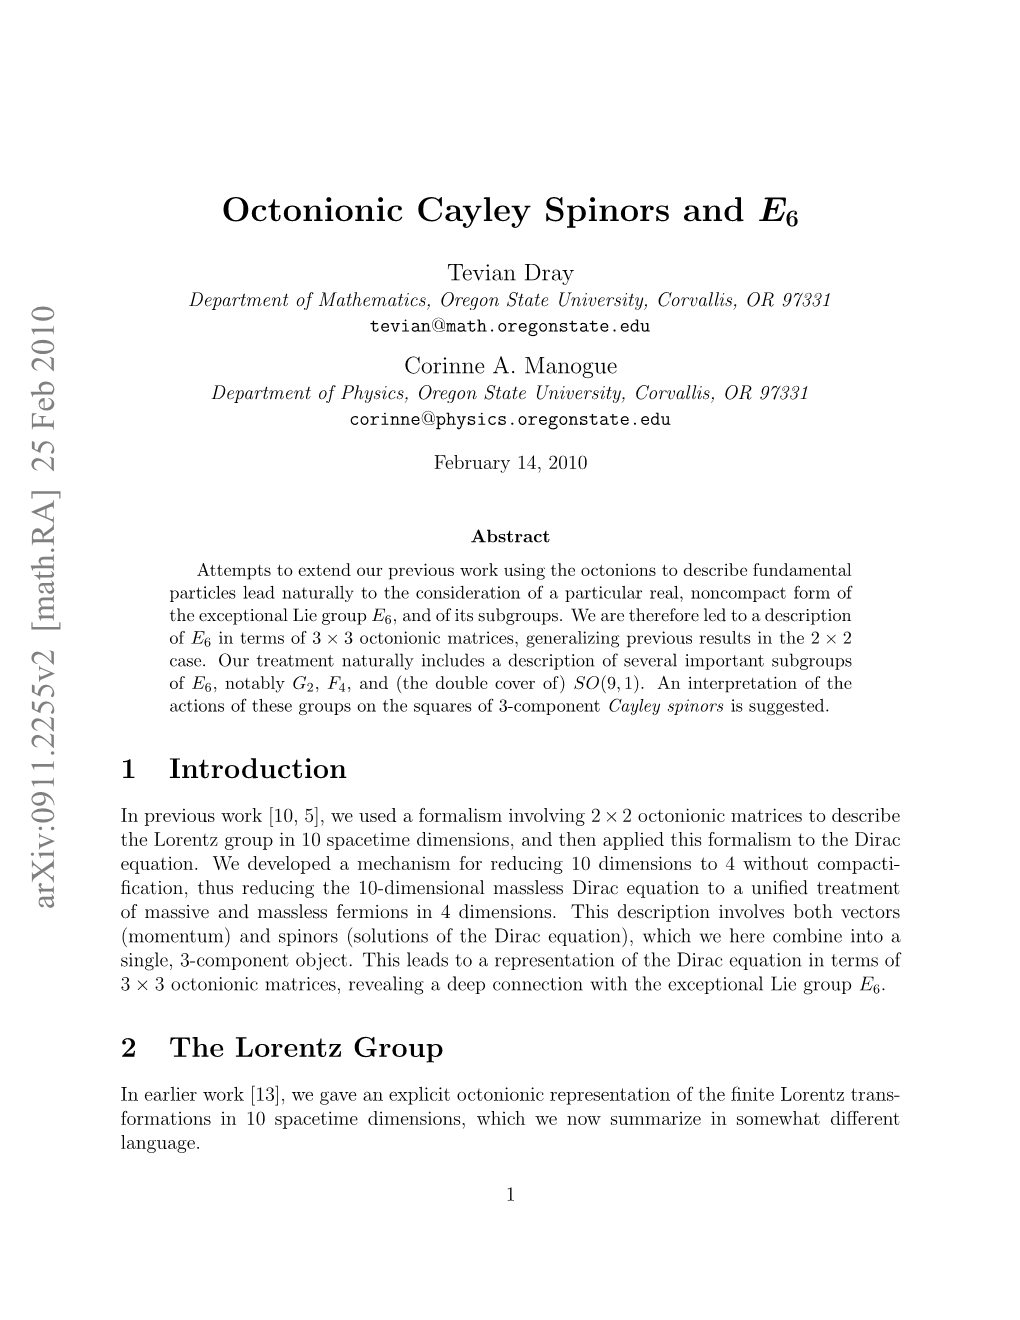 Arxiv:0911.2255V2 [Math.RA] 25 Feb 2010 Octonionic Cayley Spinors and E6